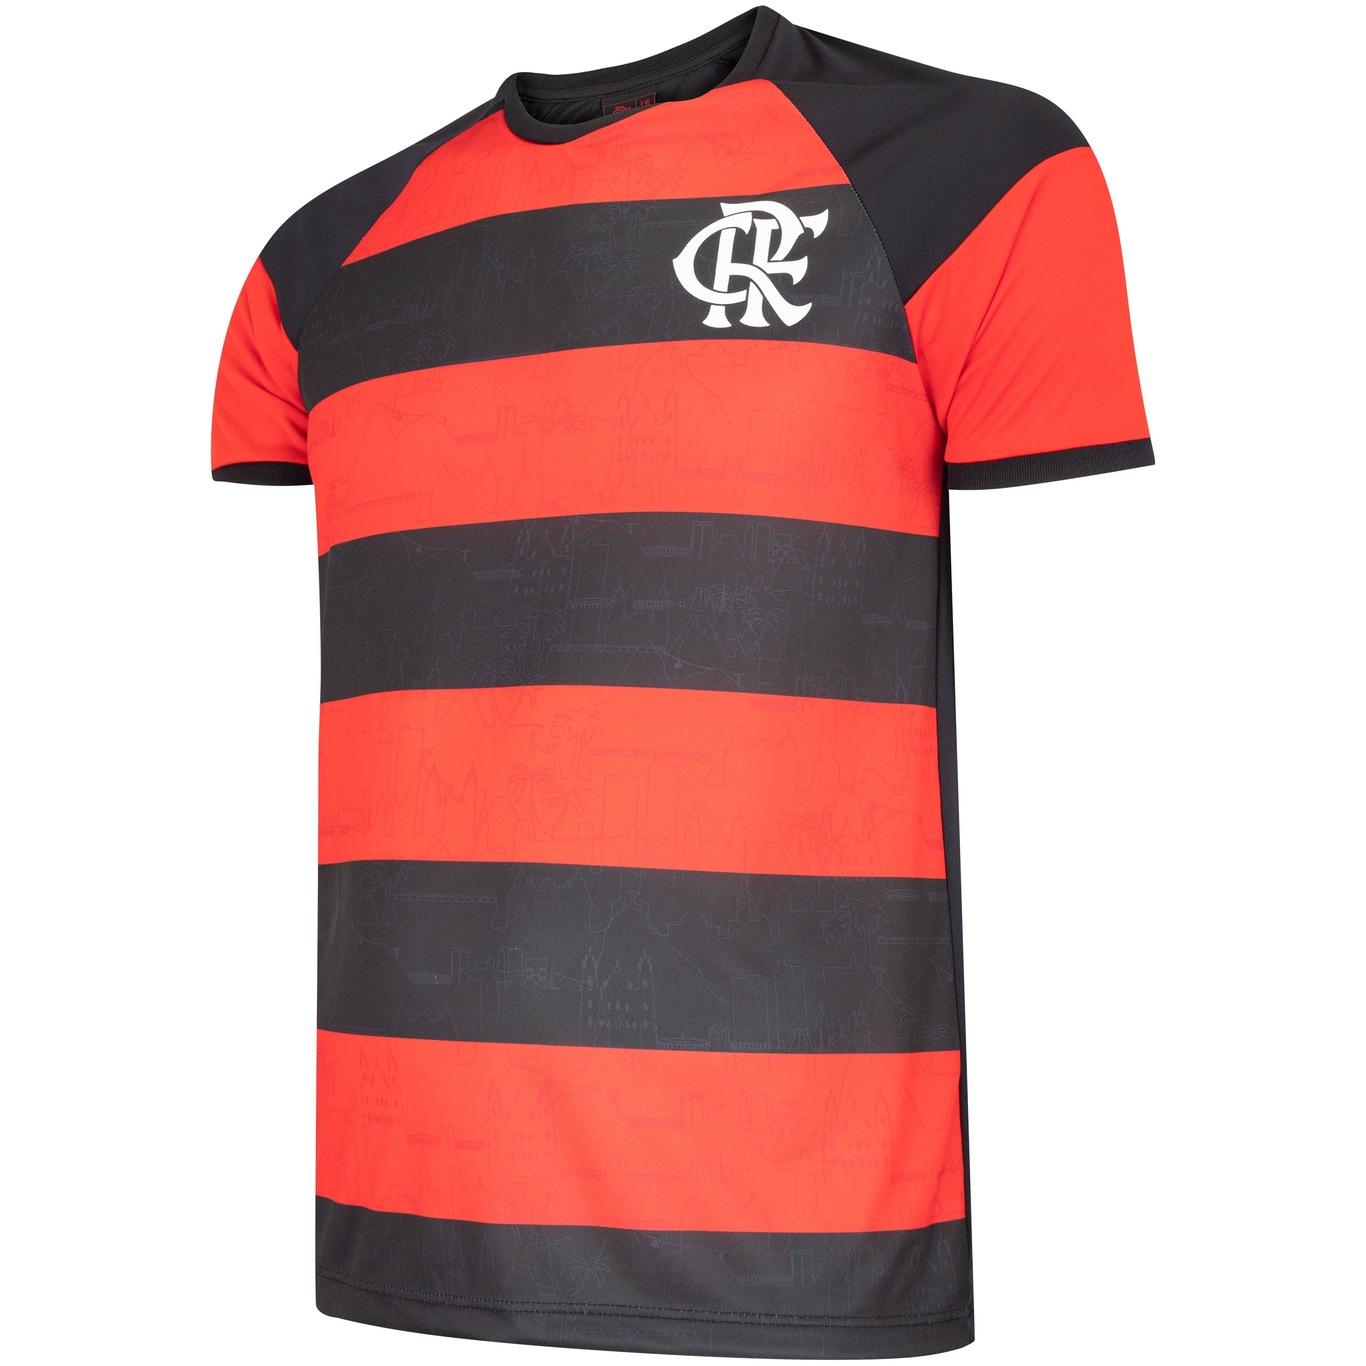 Arte Camisa do Flamengo brasil m4